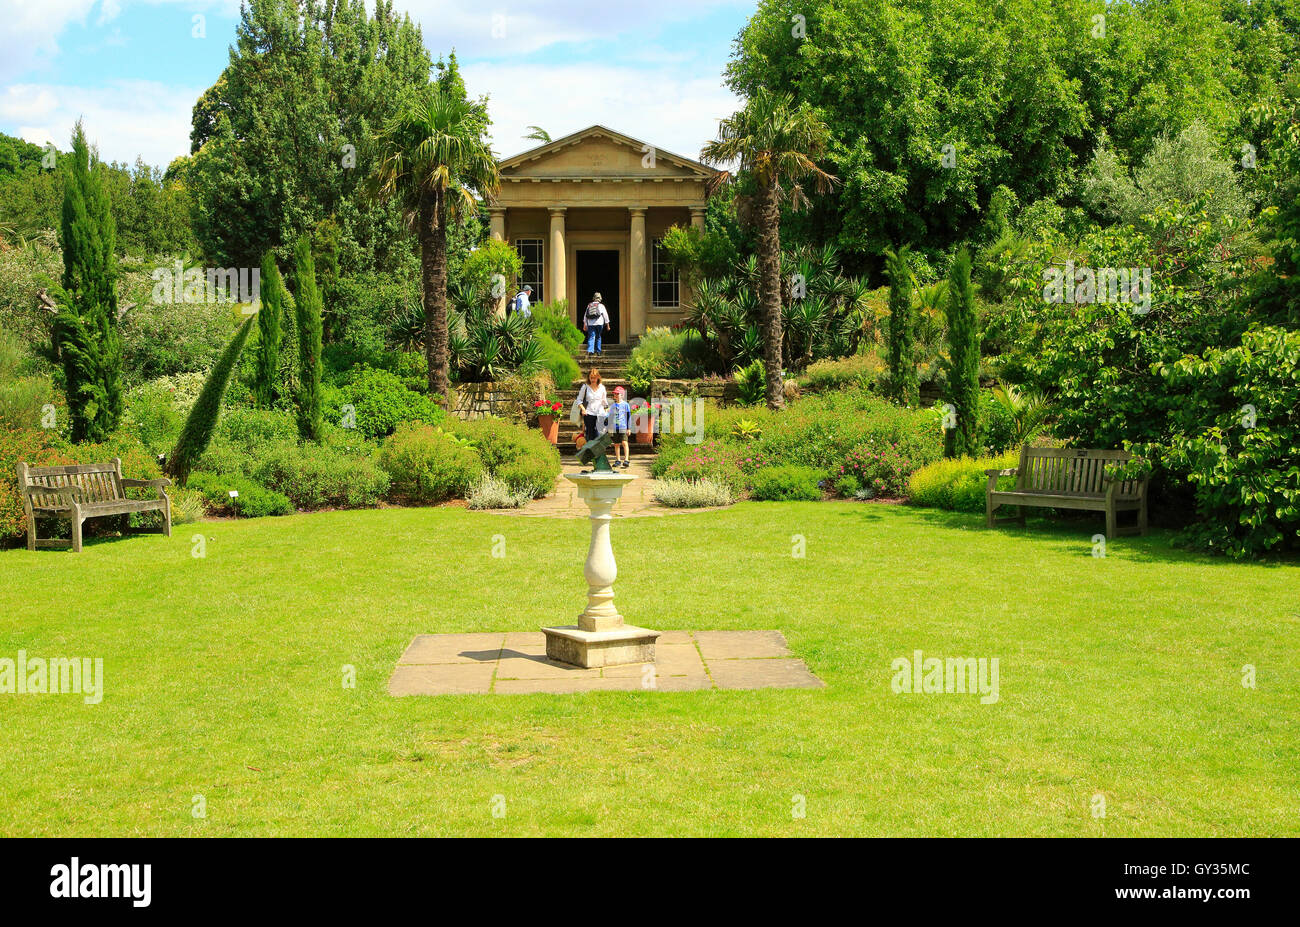 King William's Temple et jardin méditerranéen, Royal Botanic Gardens, Kew, Londres, Angleterre, Royaume-Uni Banque D'Images